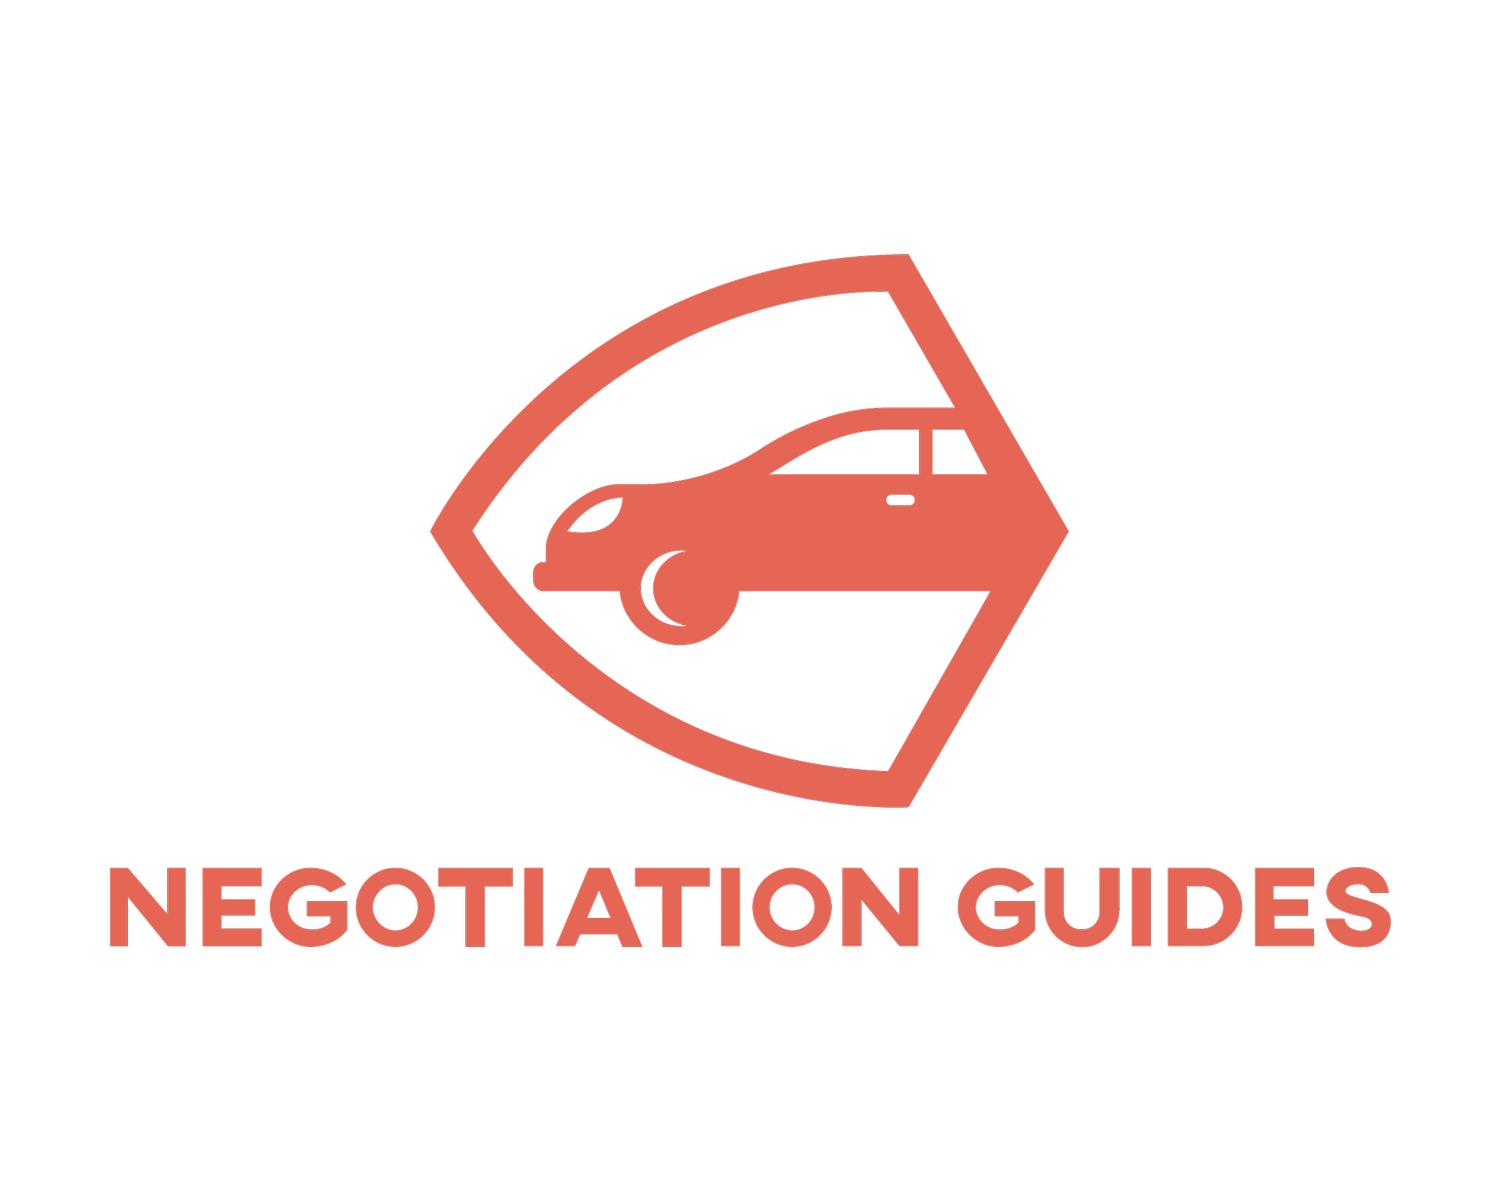 NegotiationGuides.com